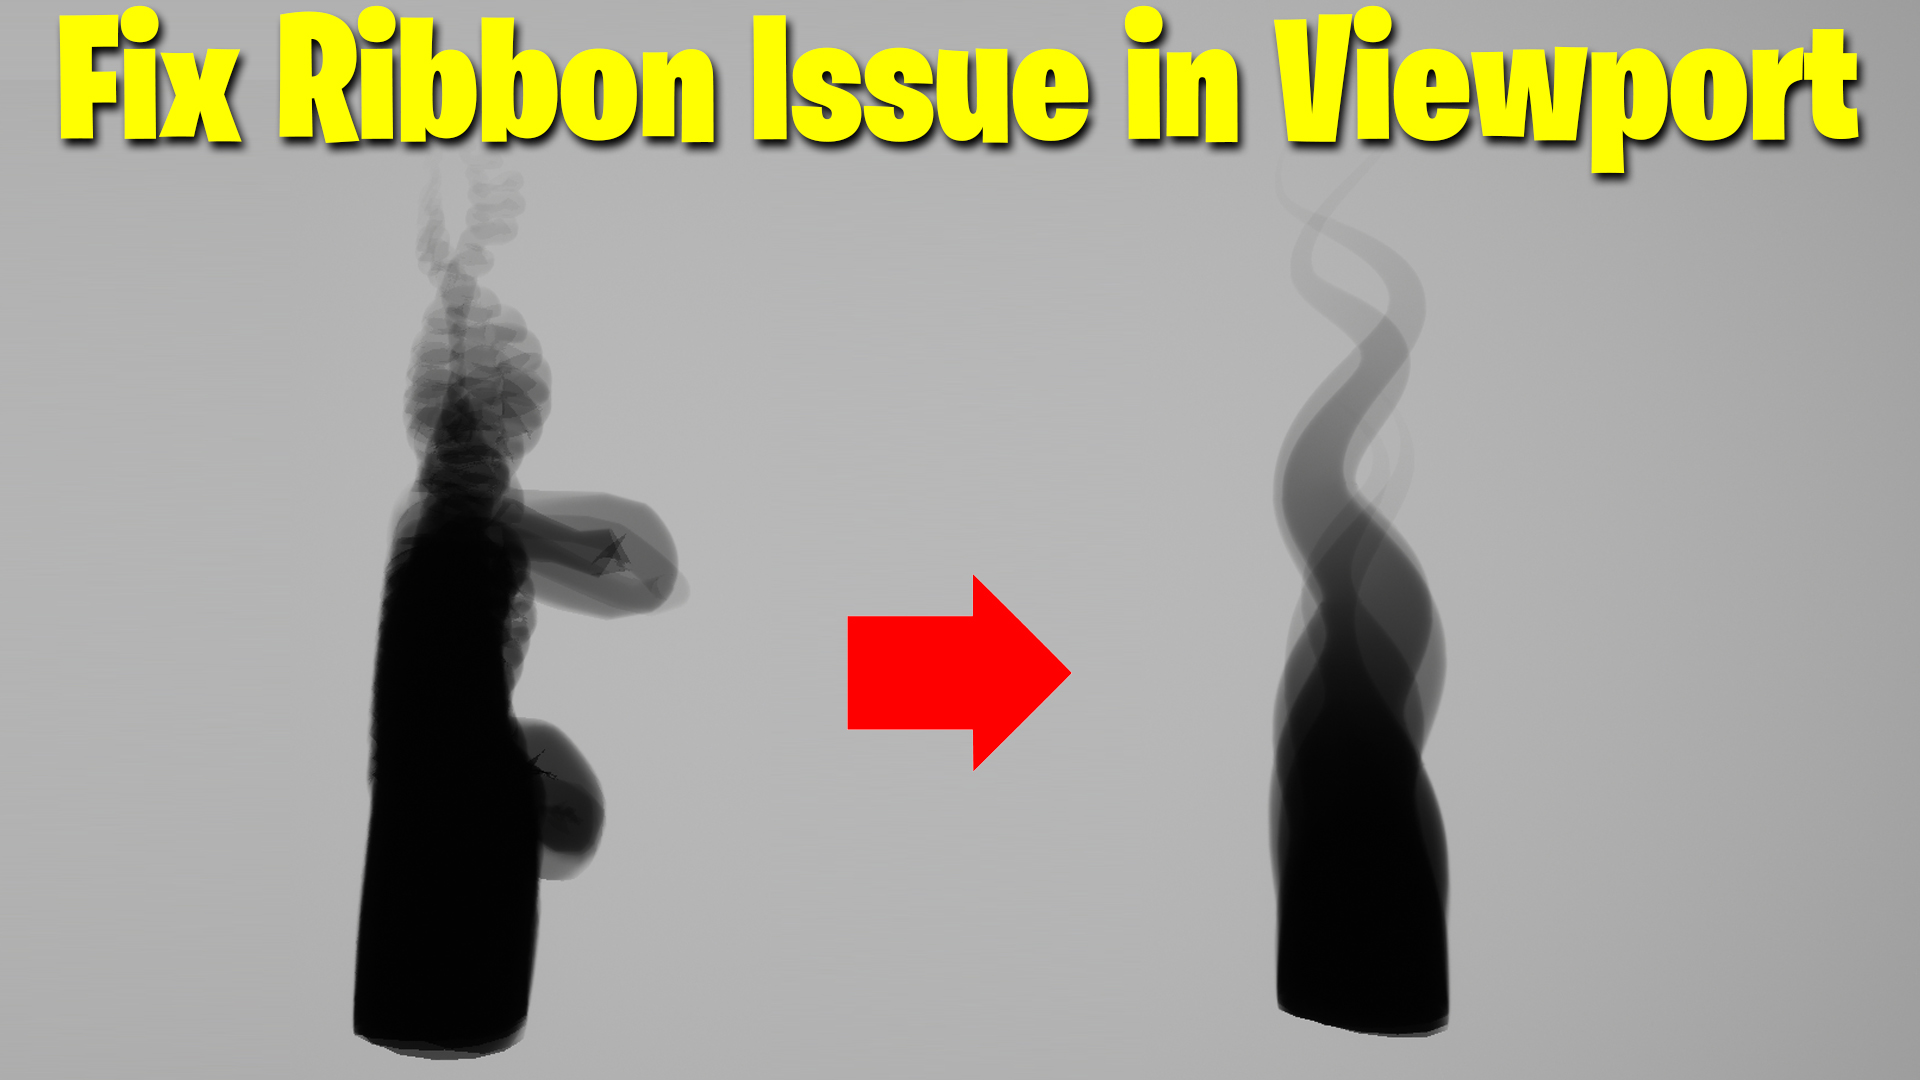 fix_ribbon_issue_in_viewport.jpg